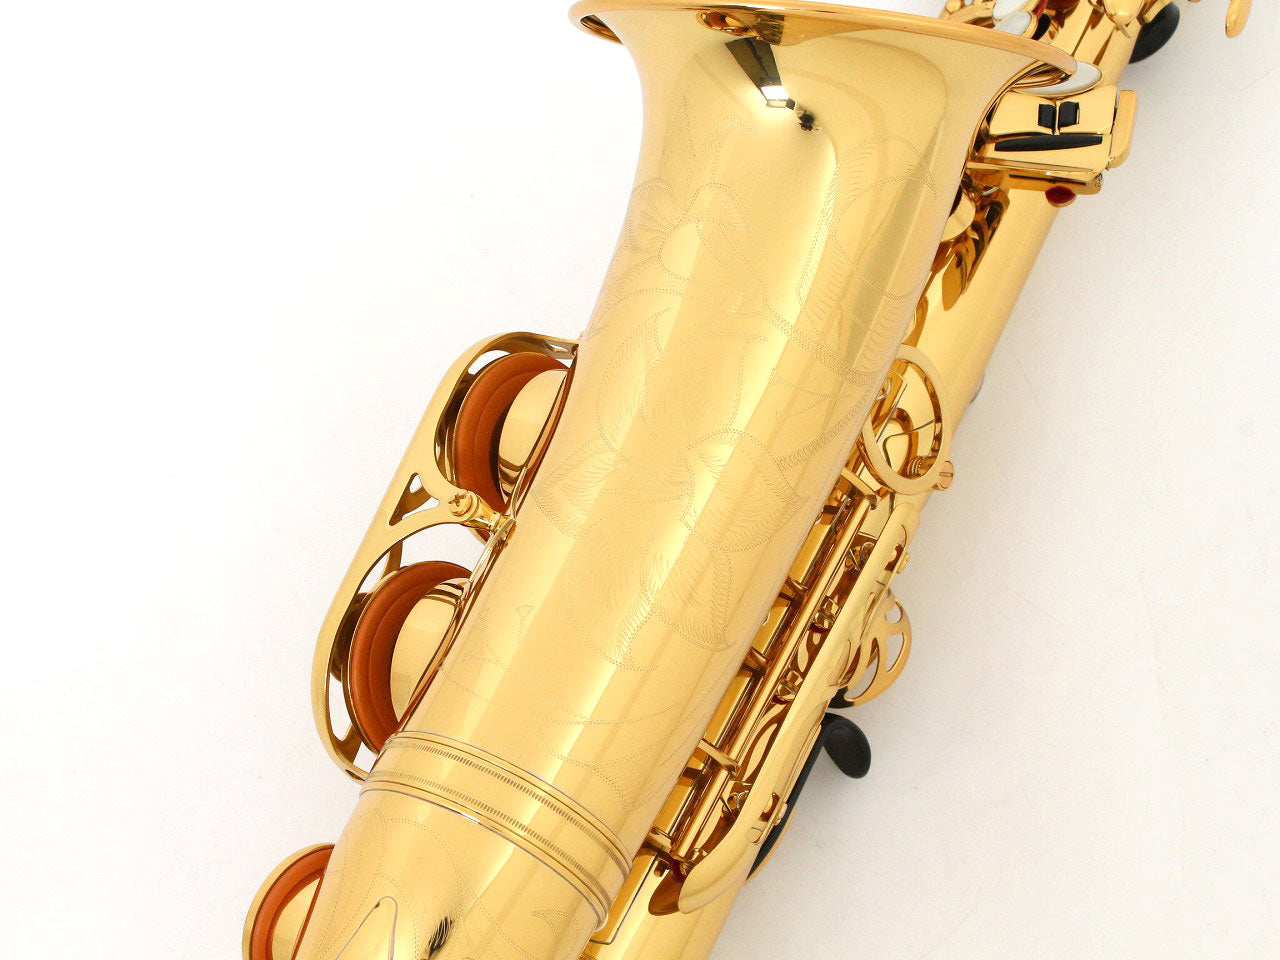 [SN E24347] USED YAMAHA / Alto saxophone YAS-875EX [11]